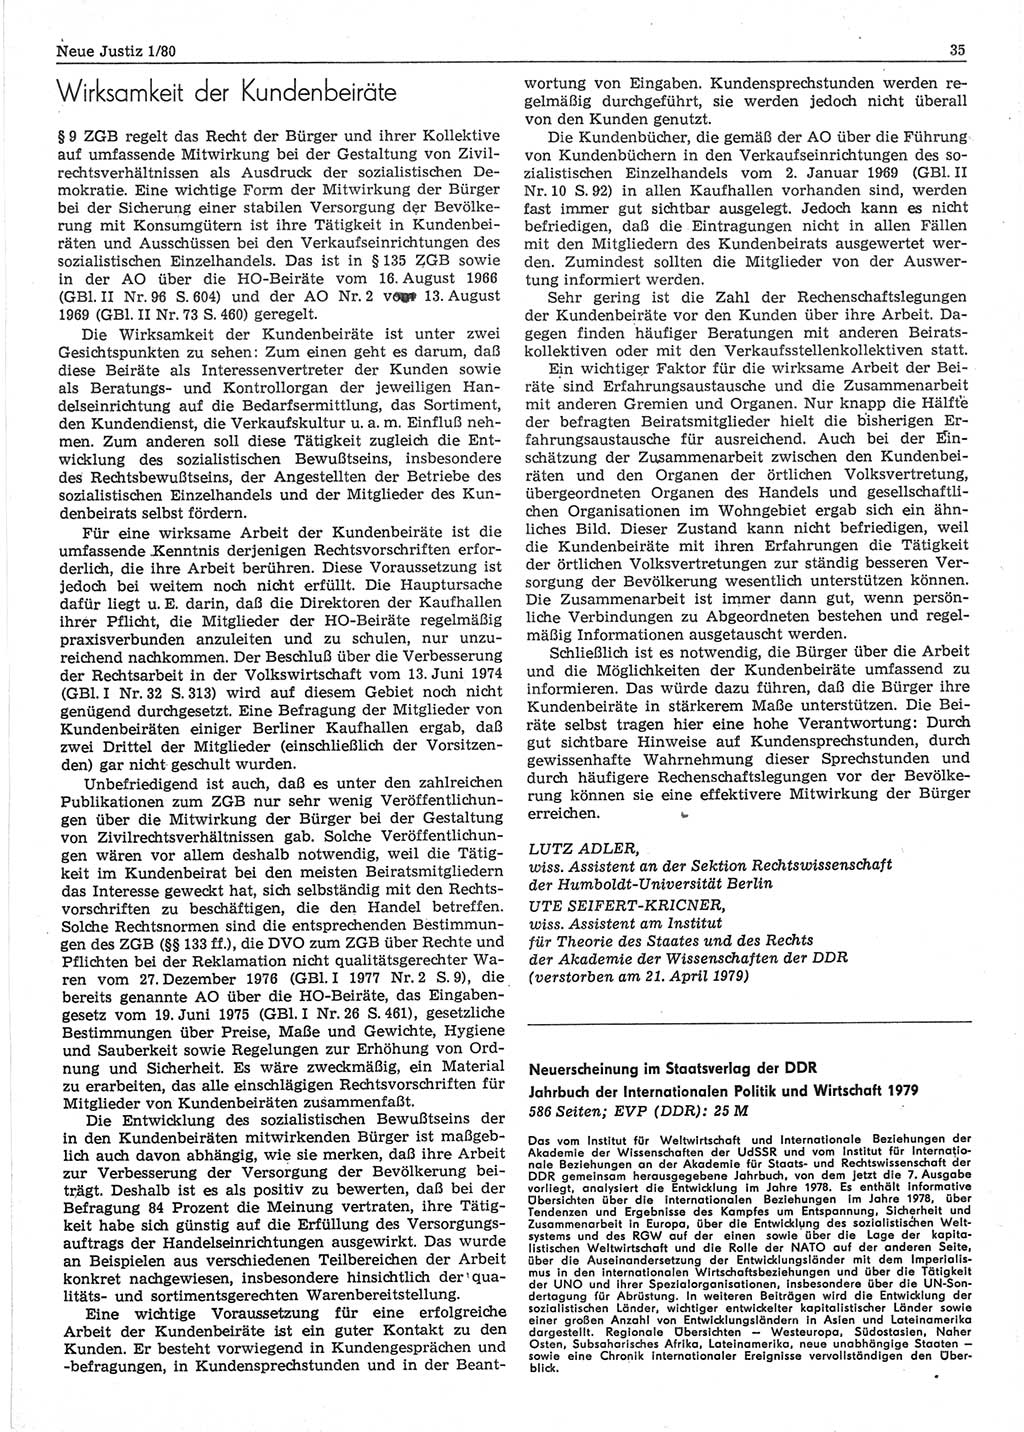 Neue Justiz (NJ), Zeitschrift für sozialistisches Recht und Gesetzlichkeit [Deutsche Demokratische Republik (DDR)], 34. Jahrgang 1980, Seite 35 (NJ DDR 1980, S. 35)